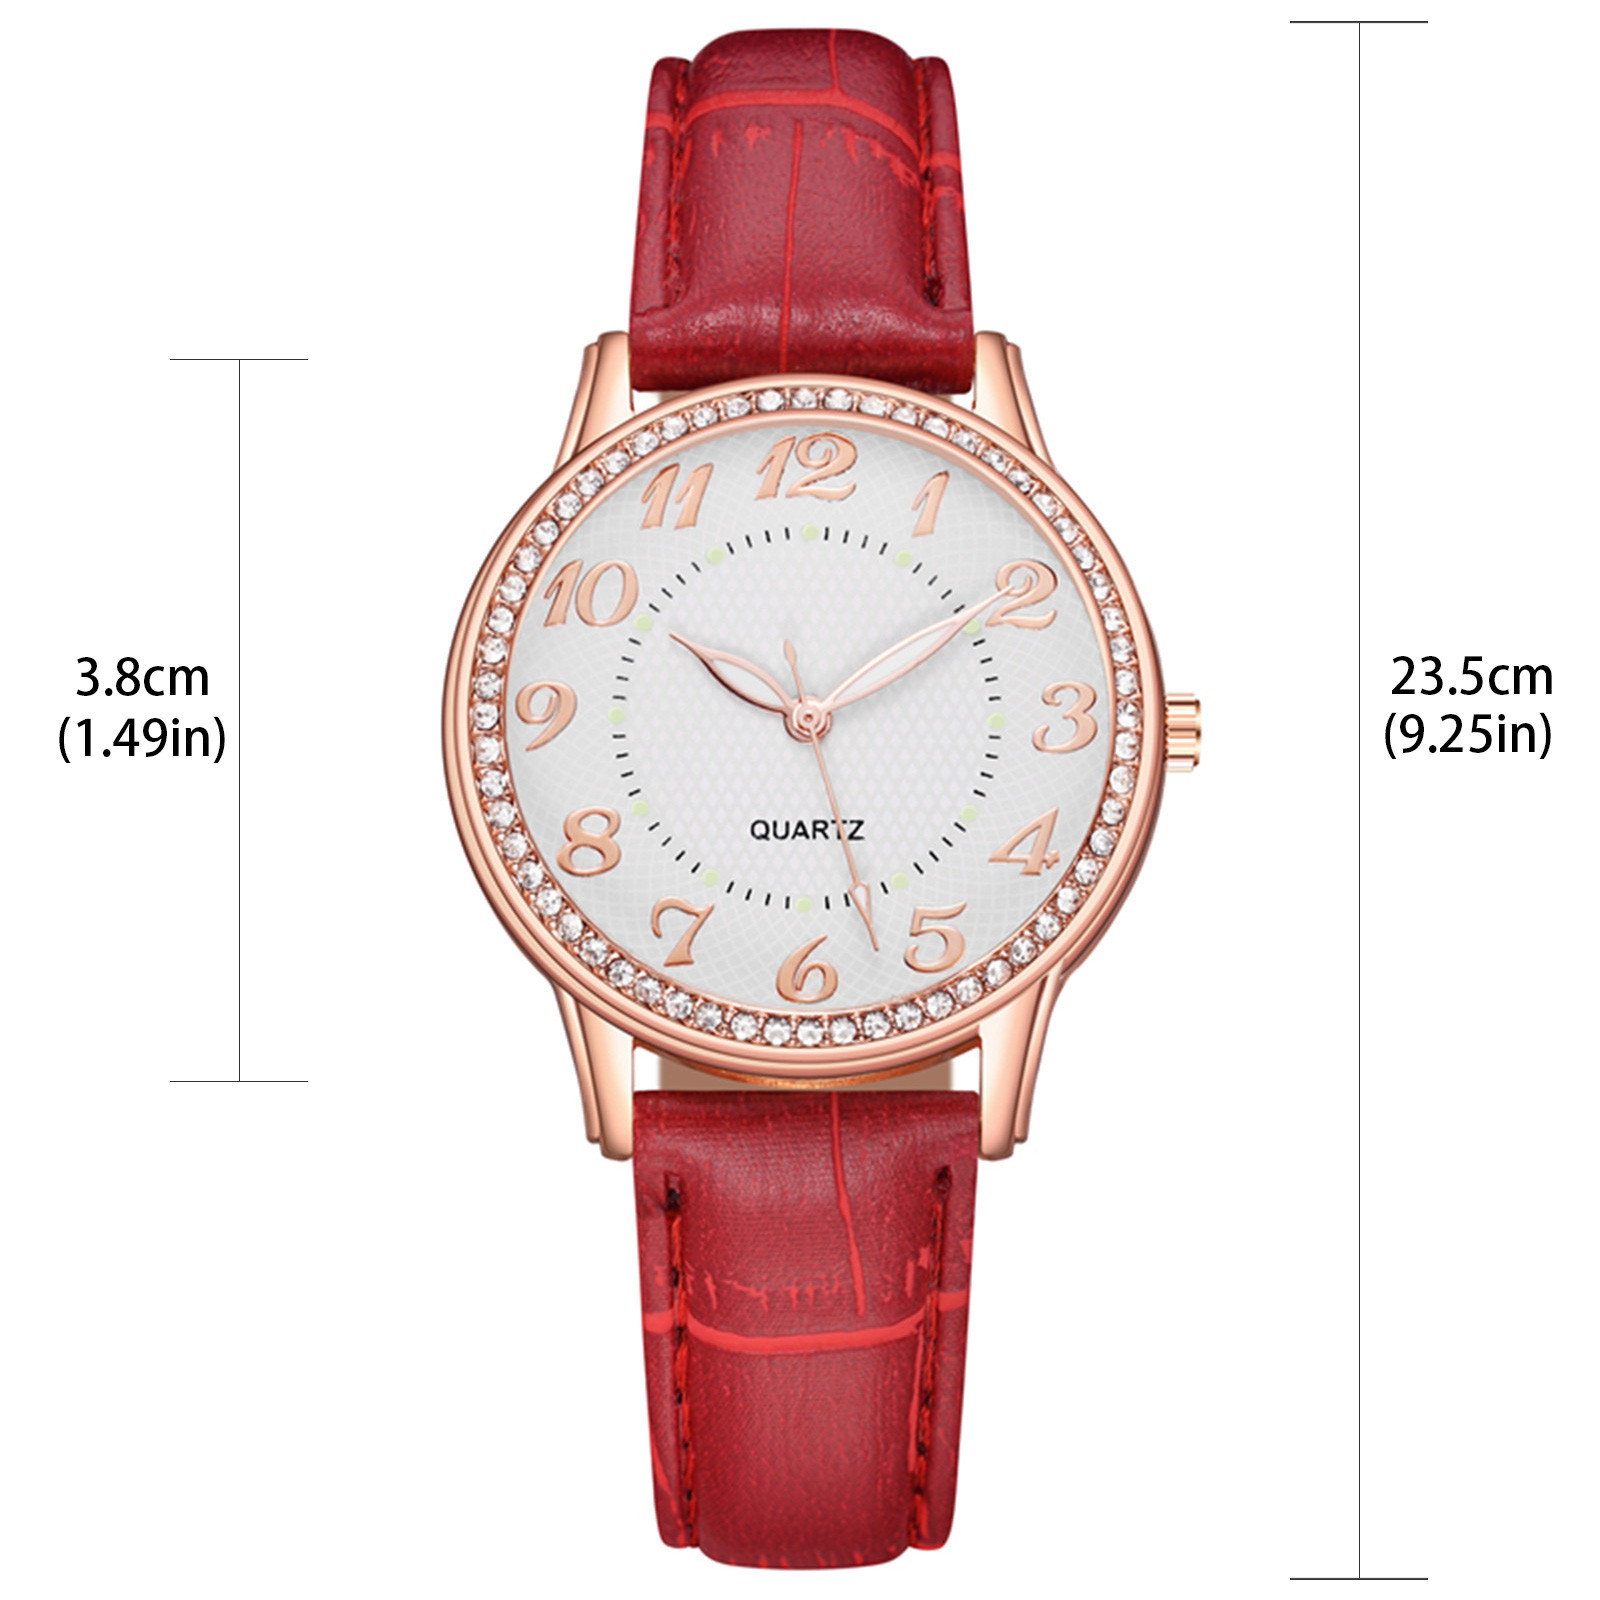 amousa Watch Ladies Diamond Luxury Watch Fashion Belt Watch - image 3 of 3